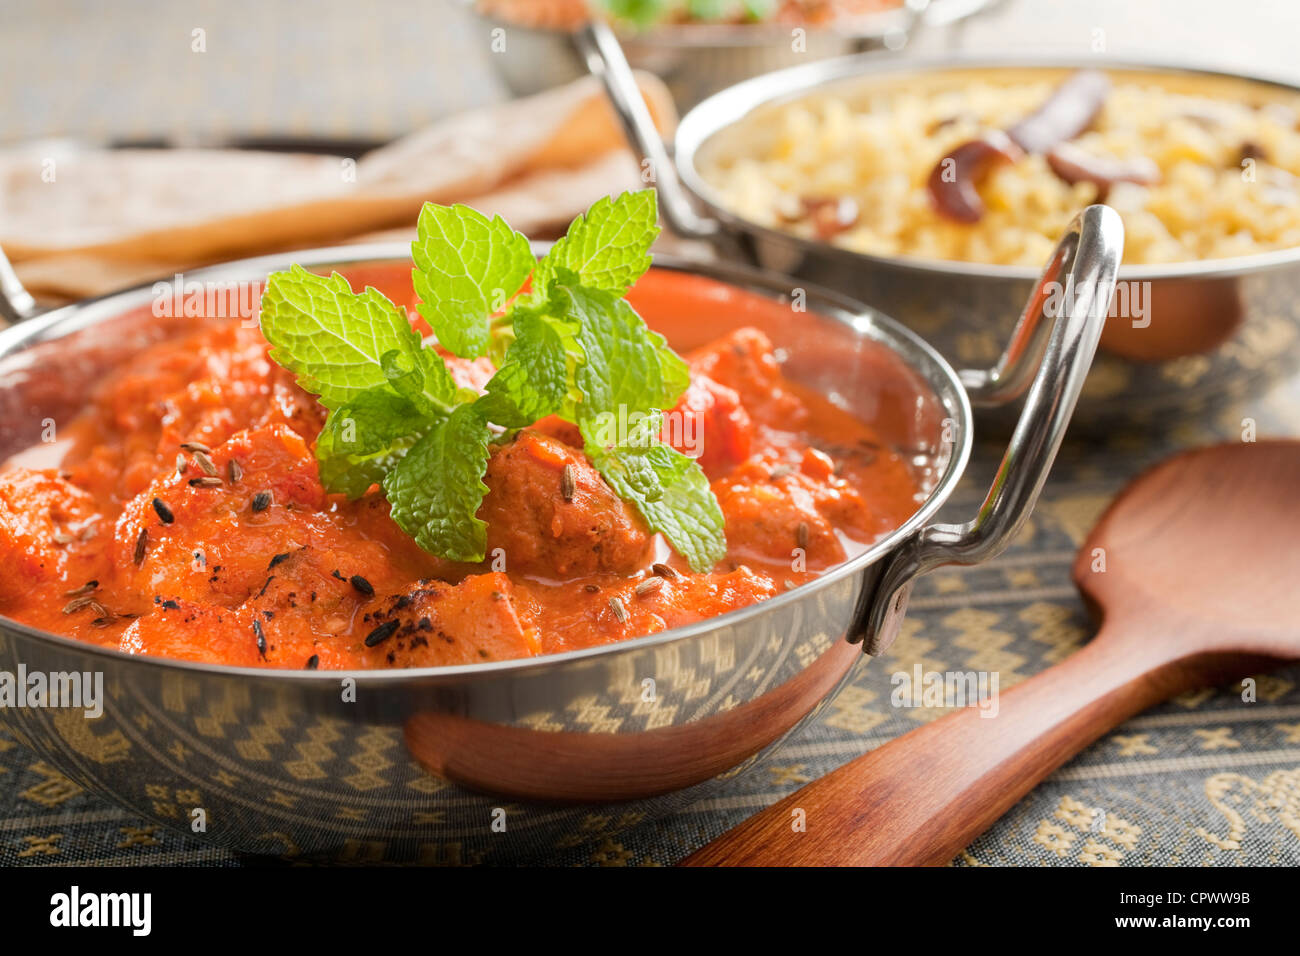 Repas indien de poulet tikka masala, garni de menthe, dans un plat ou balti karahi, accompagné de riz pilaf et chapati. Banque D'Images